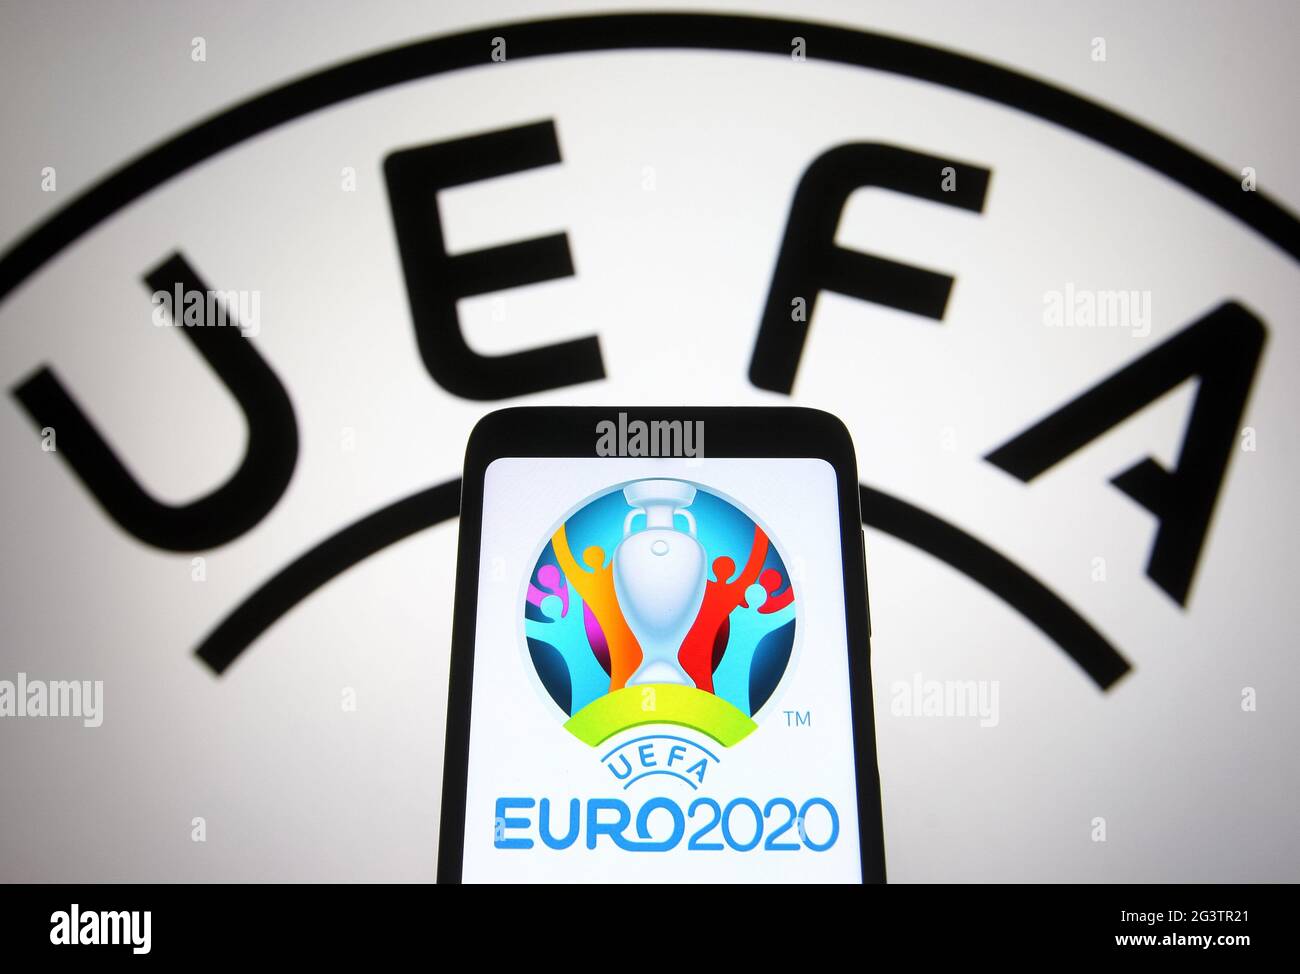 Dans cette illustration, le logo de l'UEFA Euro 2020 (Championnat d'Europe de football 2020 de l'UEFA) est visible sur l'écran d'un smartphone devant le logo de l'UEFA. Banque D'Images